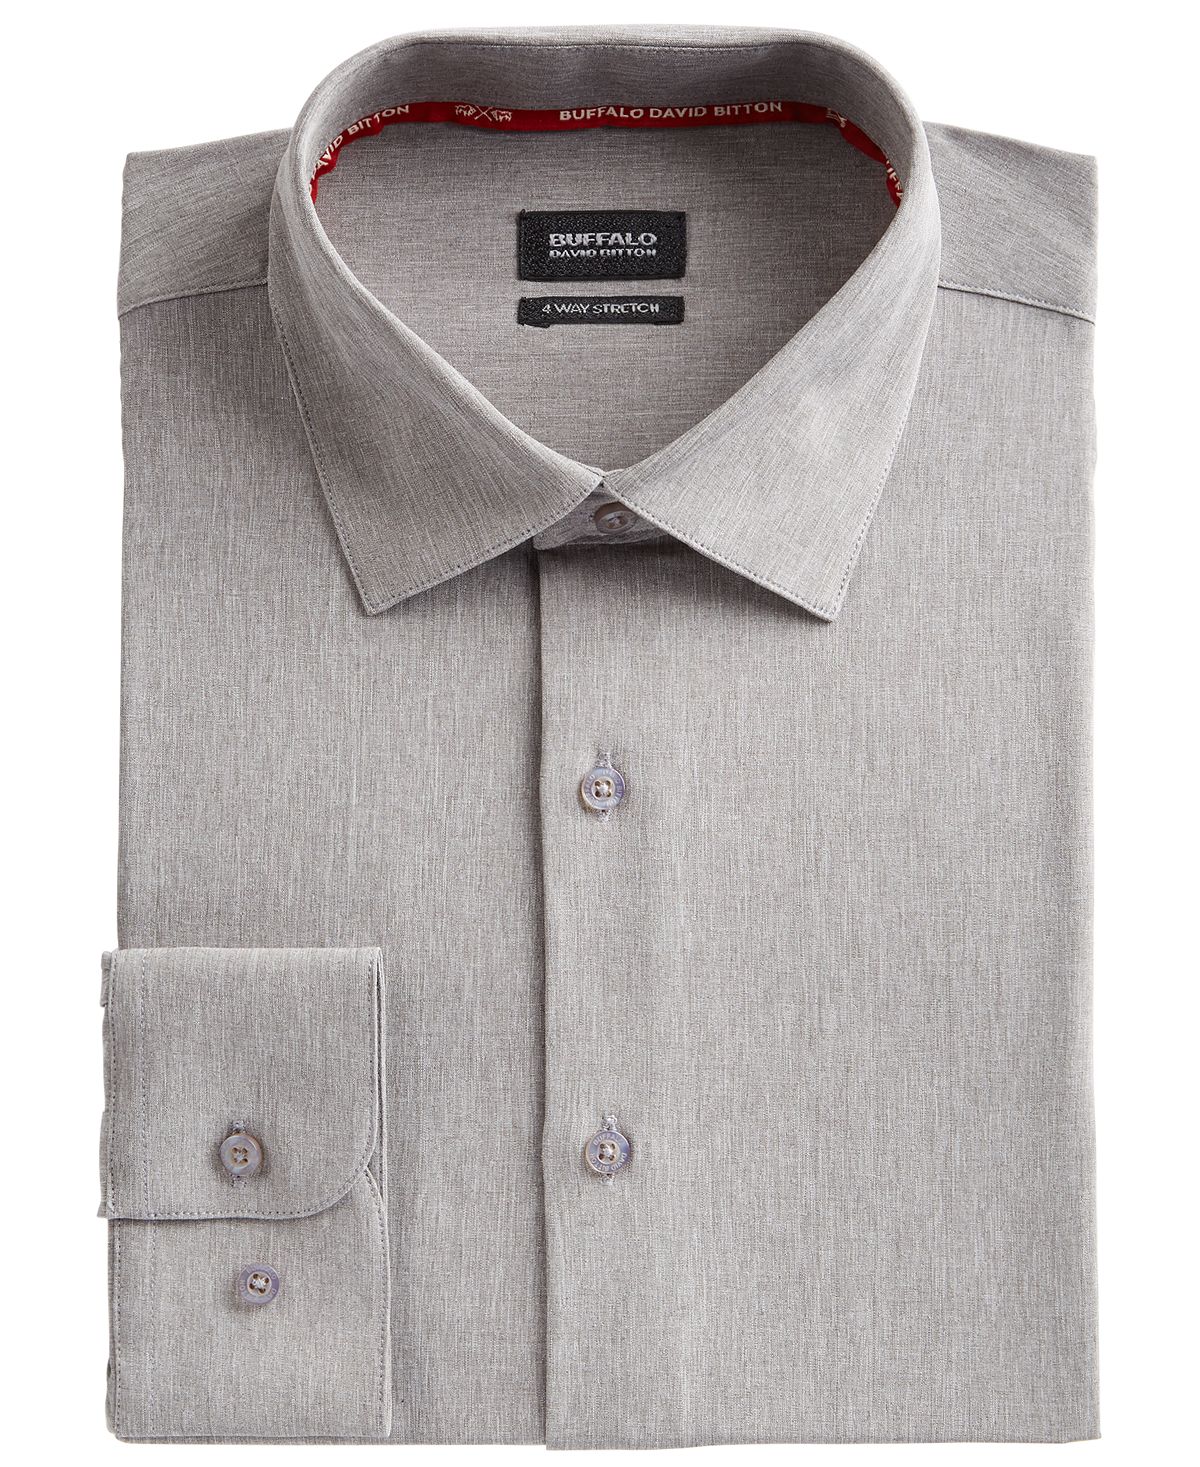 Мужская классическая рубашка slim-fit performance stretch серого цвета из однотонного шамбре Buffalo David Bitton, серый bitton arielle 3 por uno a2